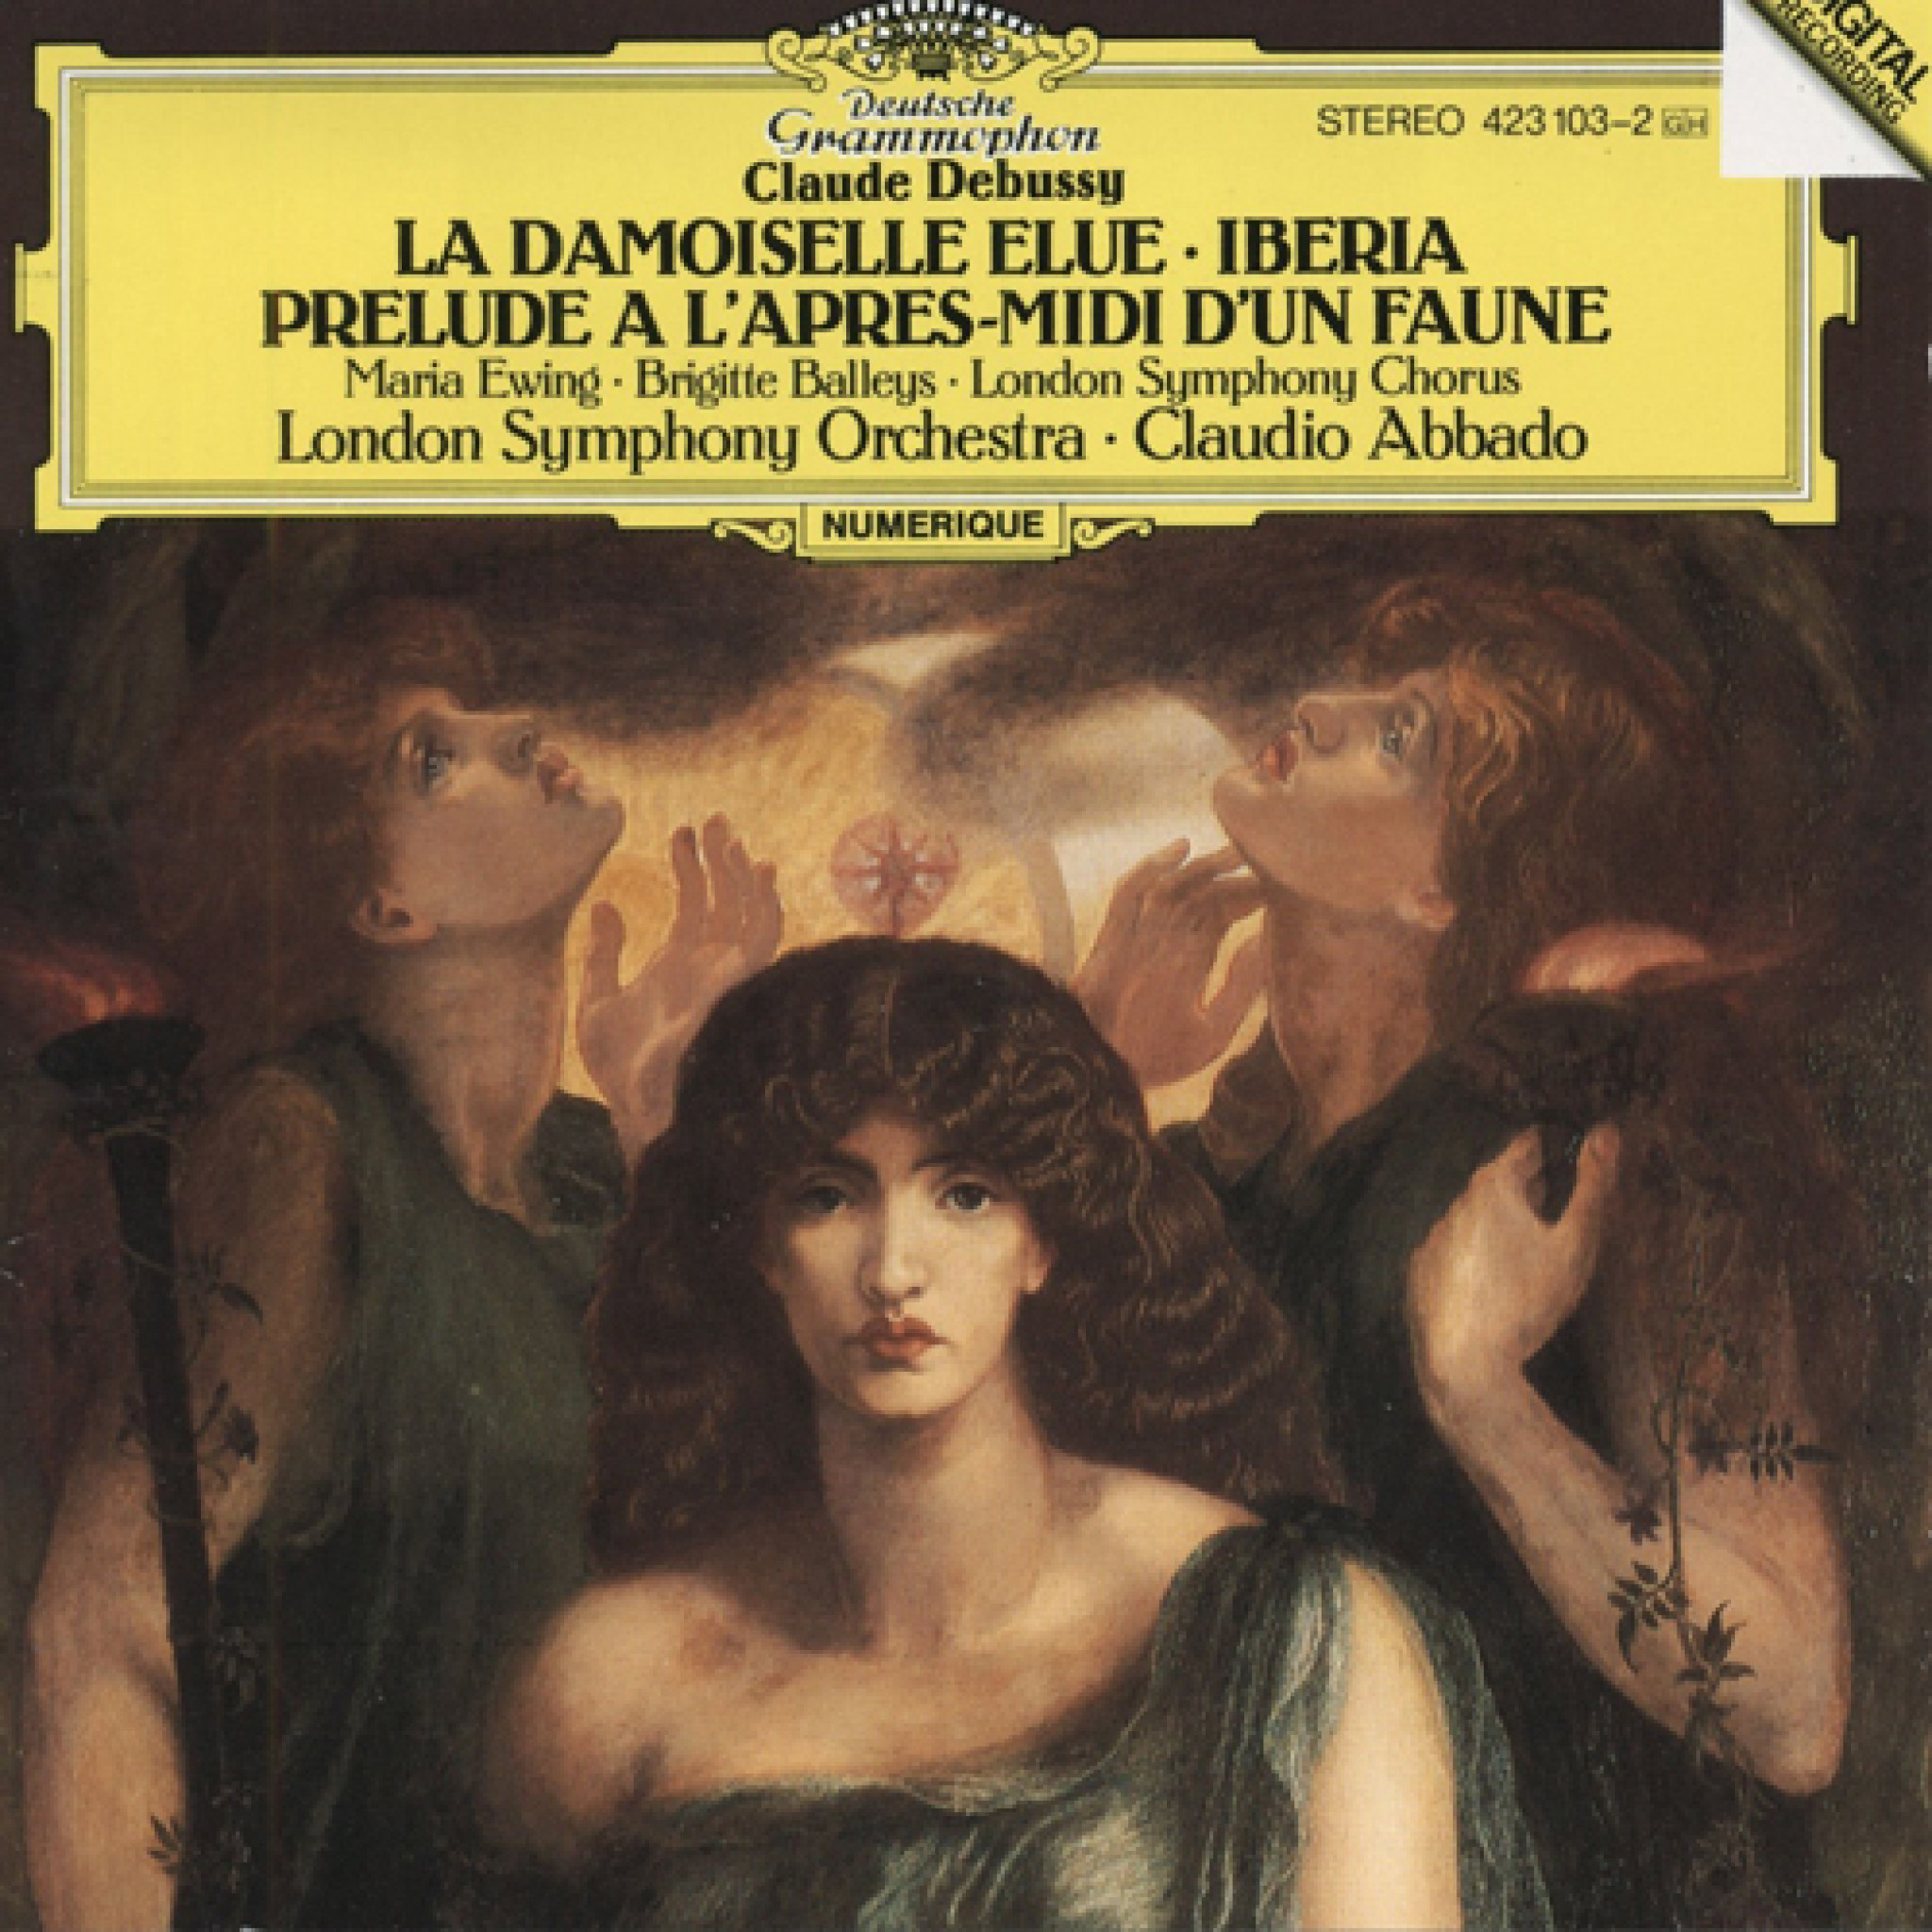 Debussy: La Damoiselle Elue / Iberia / Prelude a l'apres-midi d'un faune